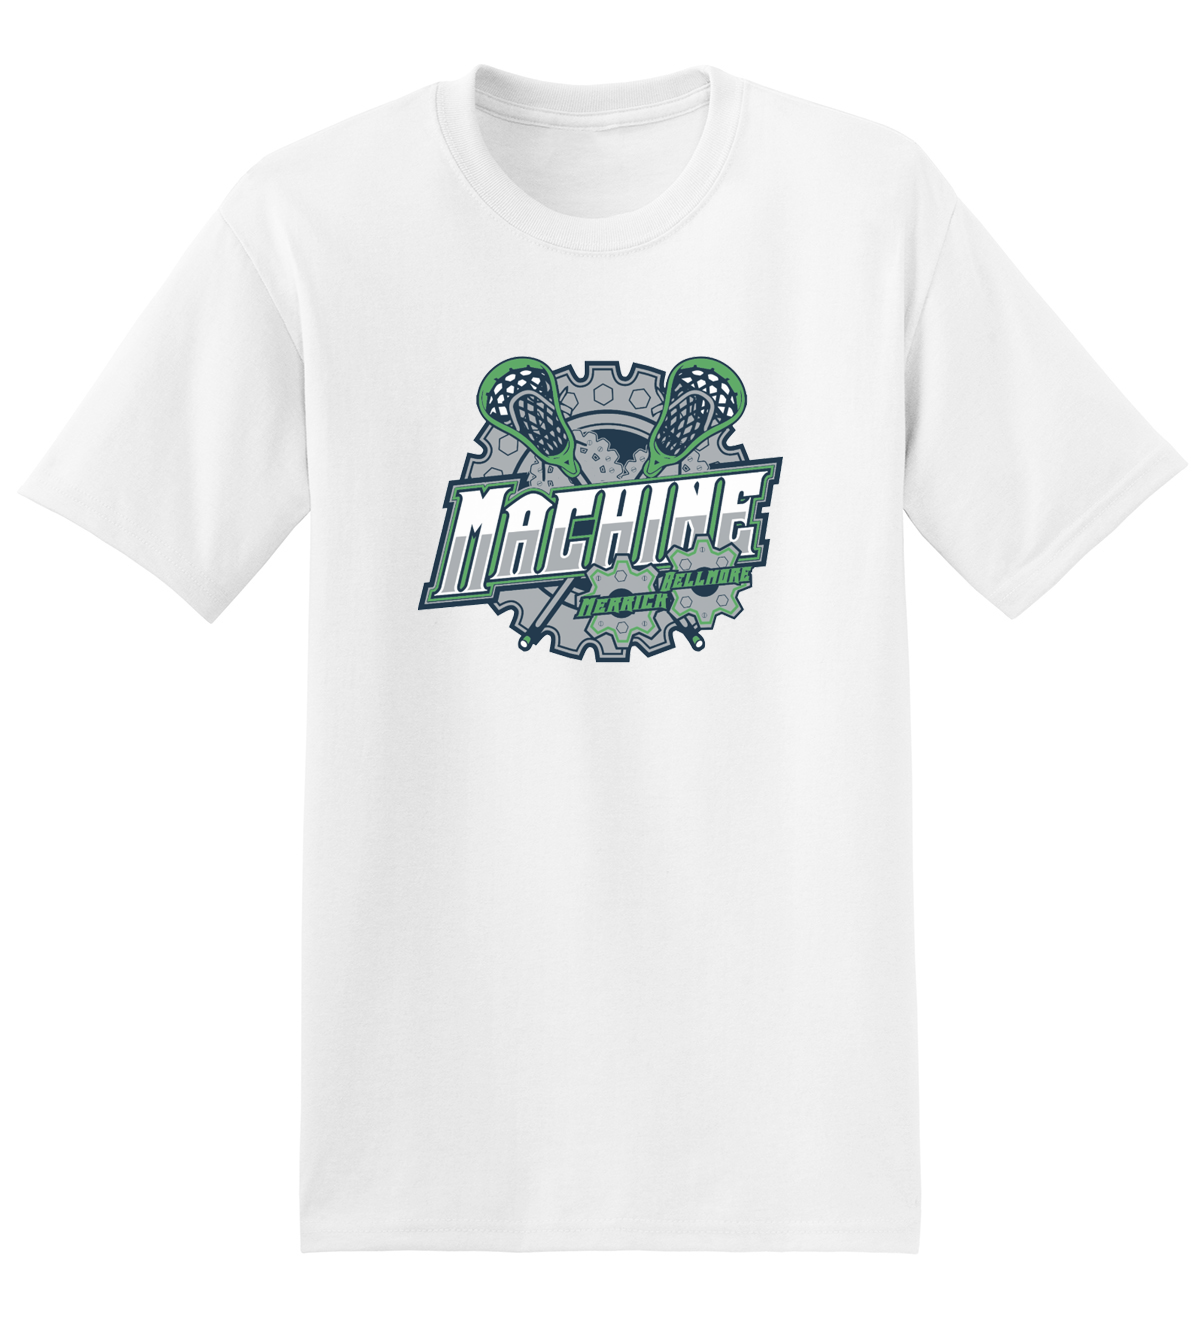 Merrick-Bellmore Machine T-Shirt (White)